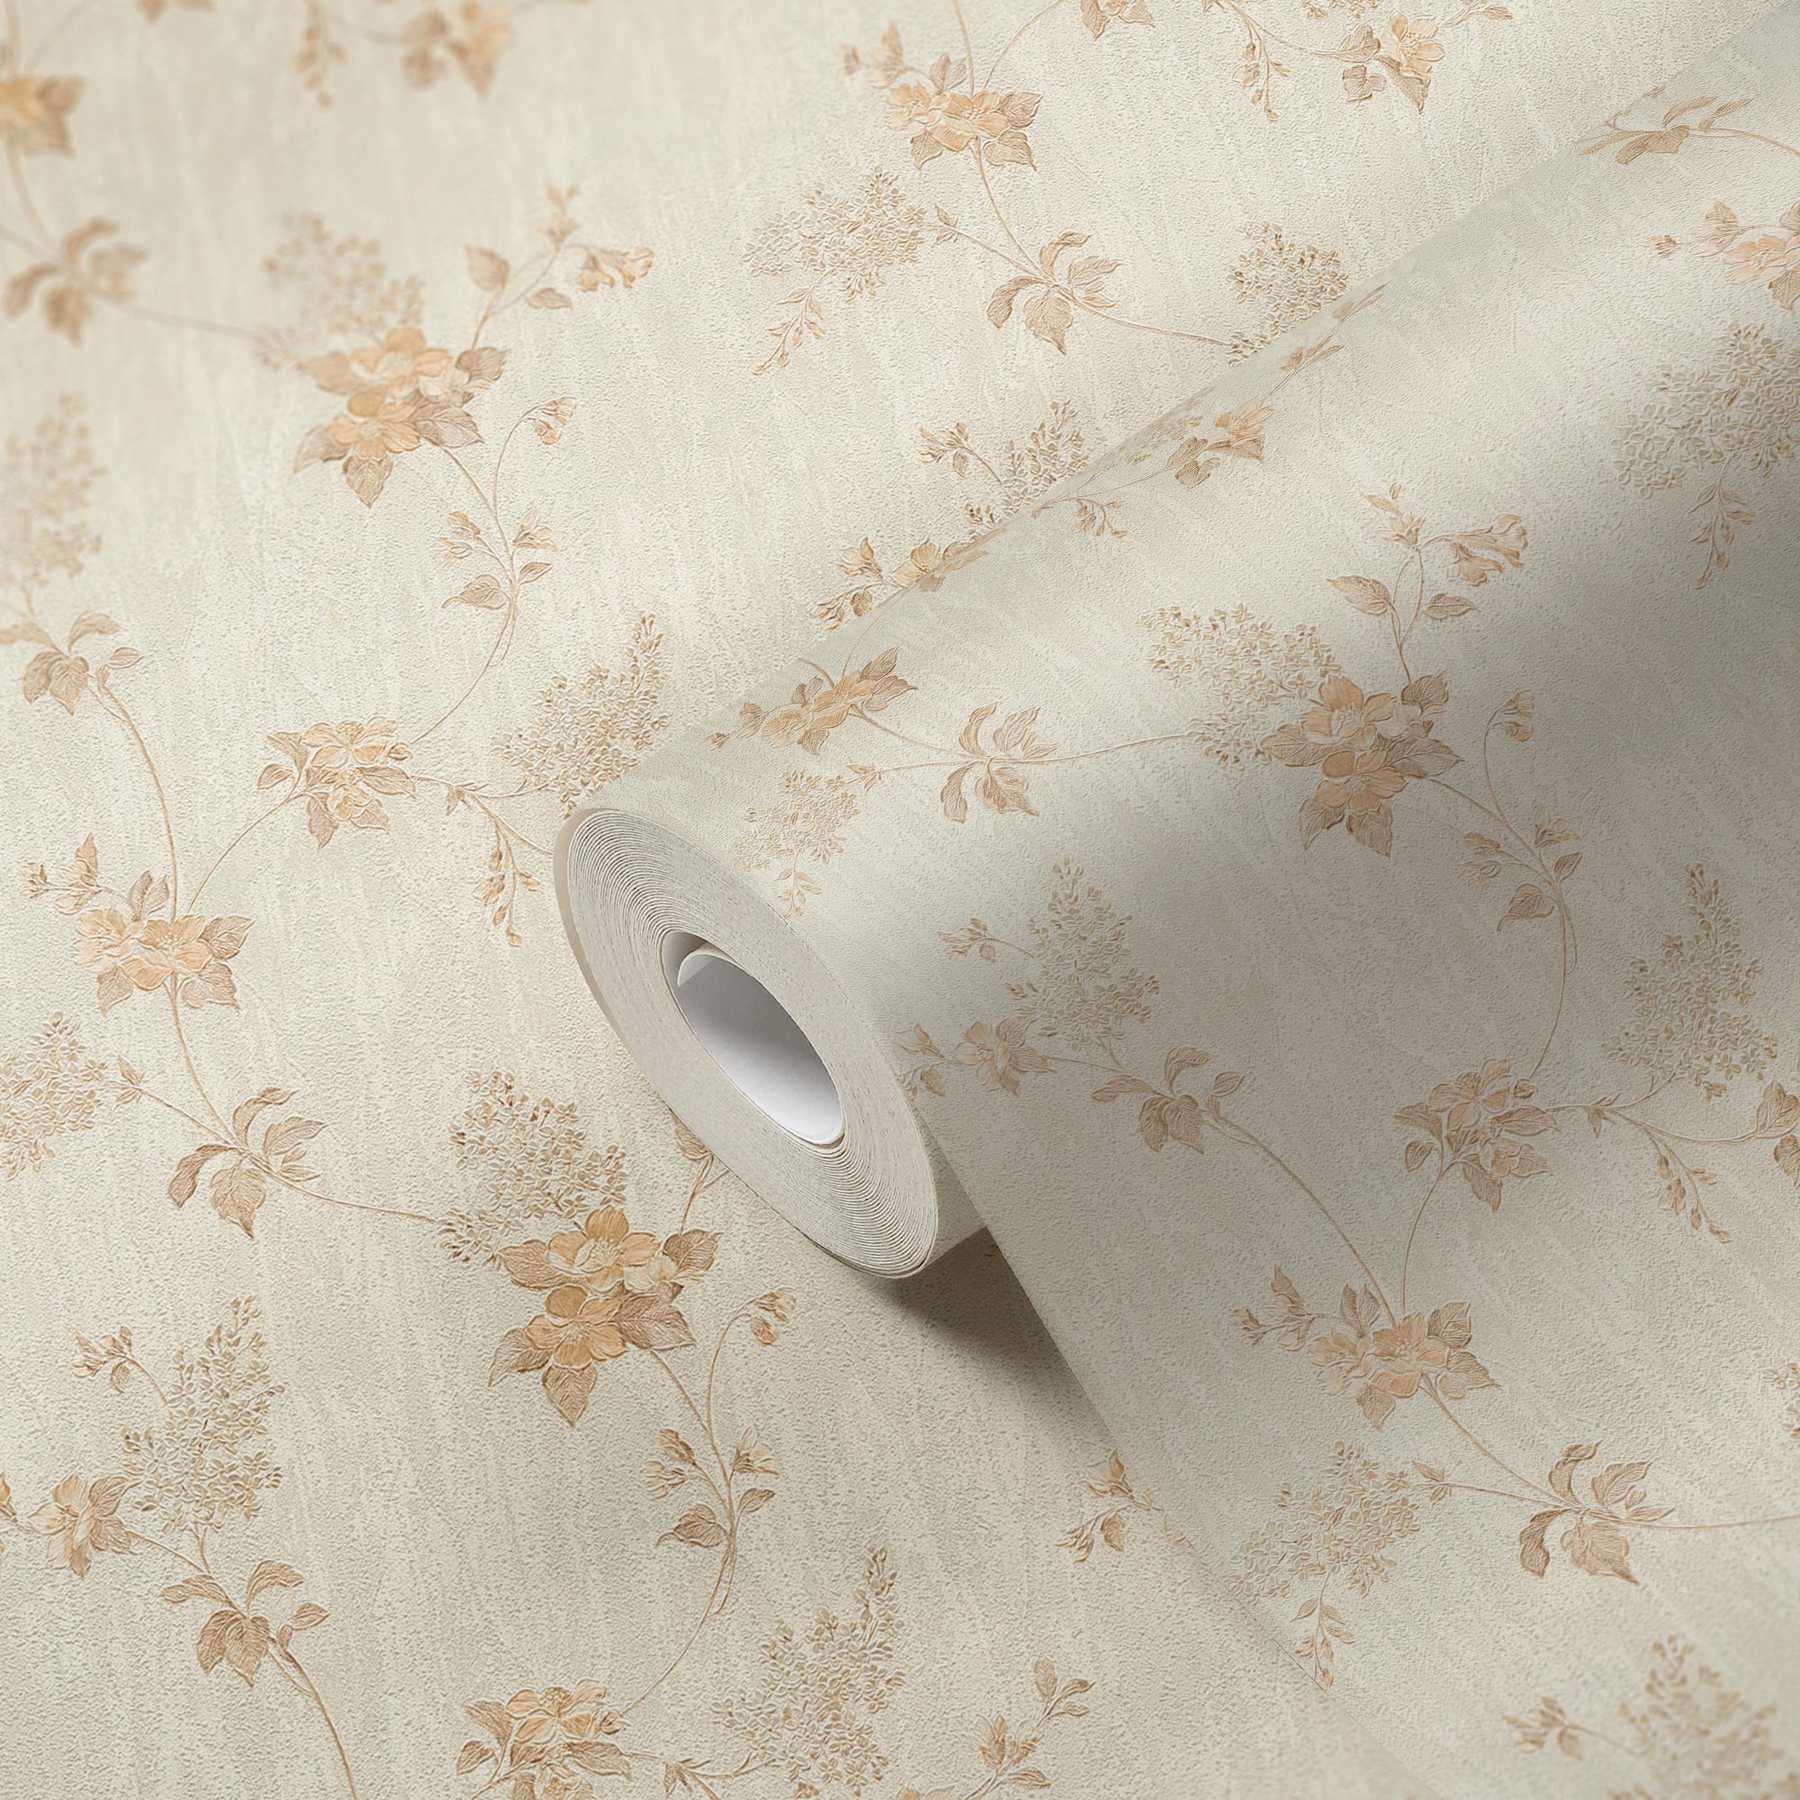             Papier peint avec motifs floraux et aspect plâtre - beige
        